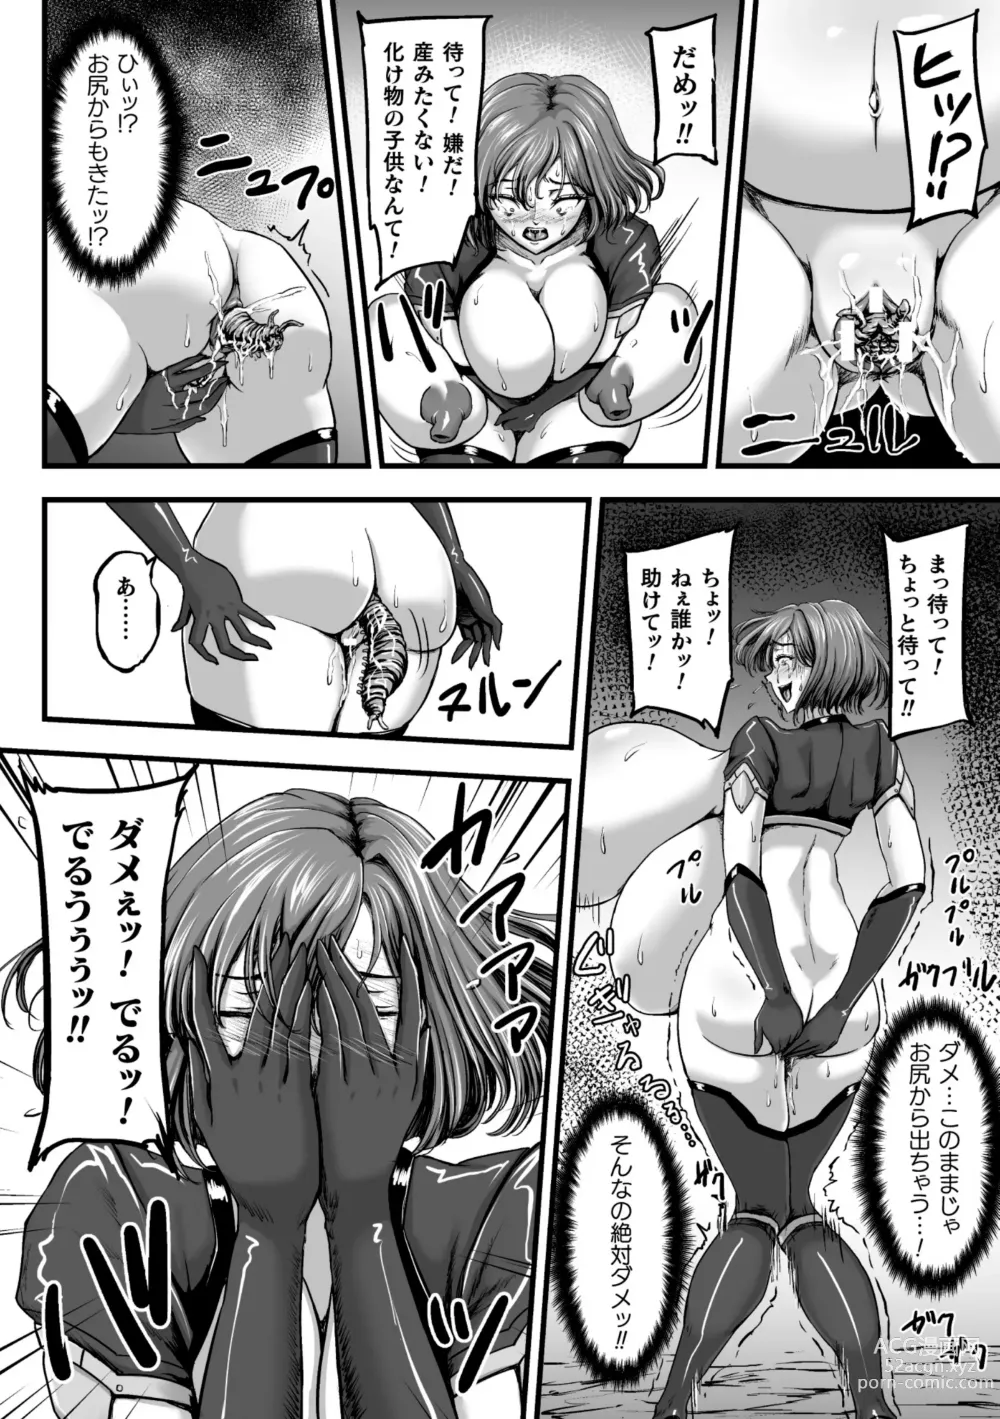 Page 40 of manga Kangoku Tentacle Battleship Episode 3